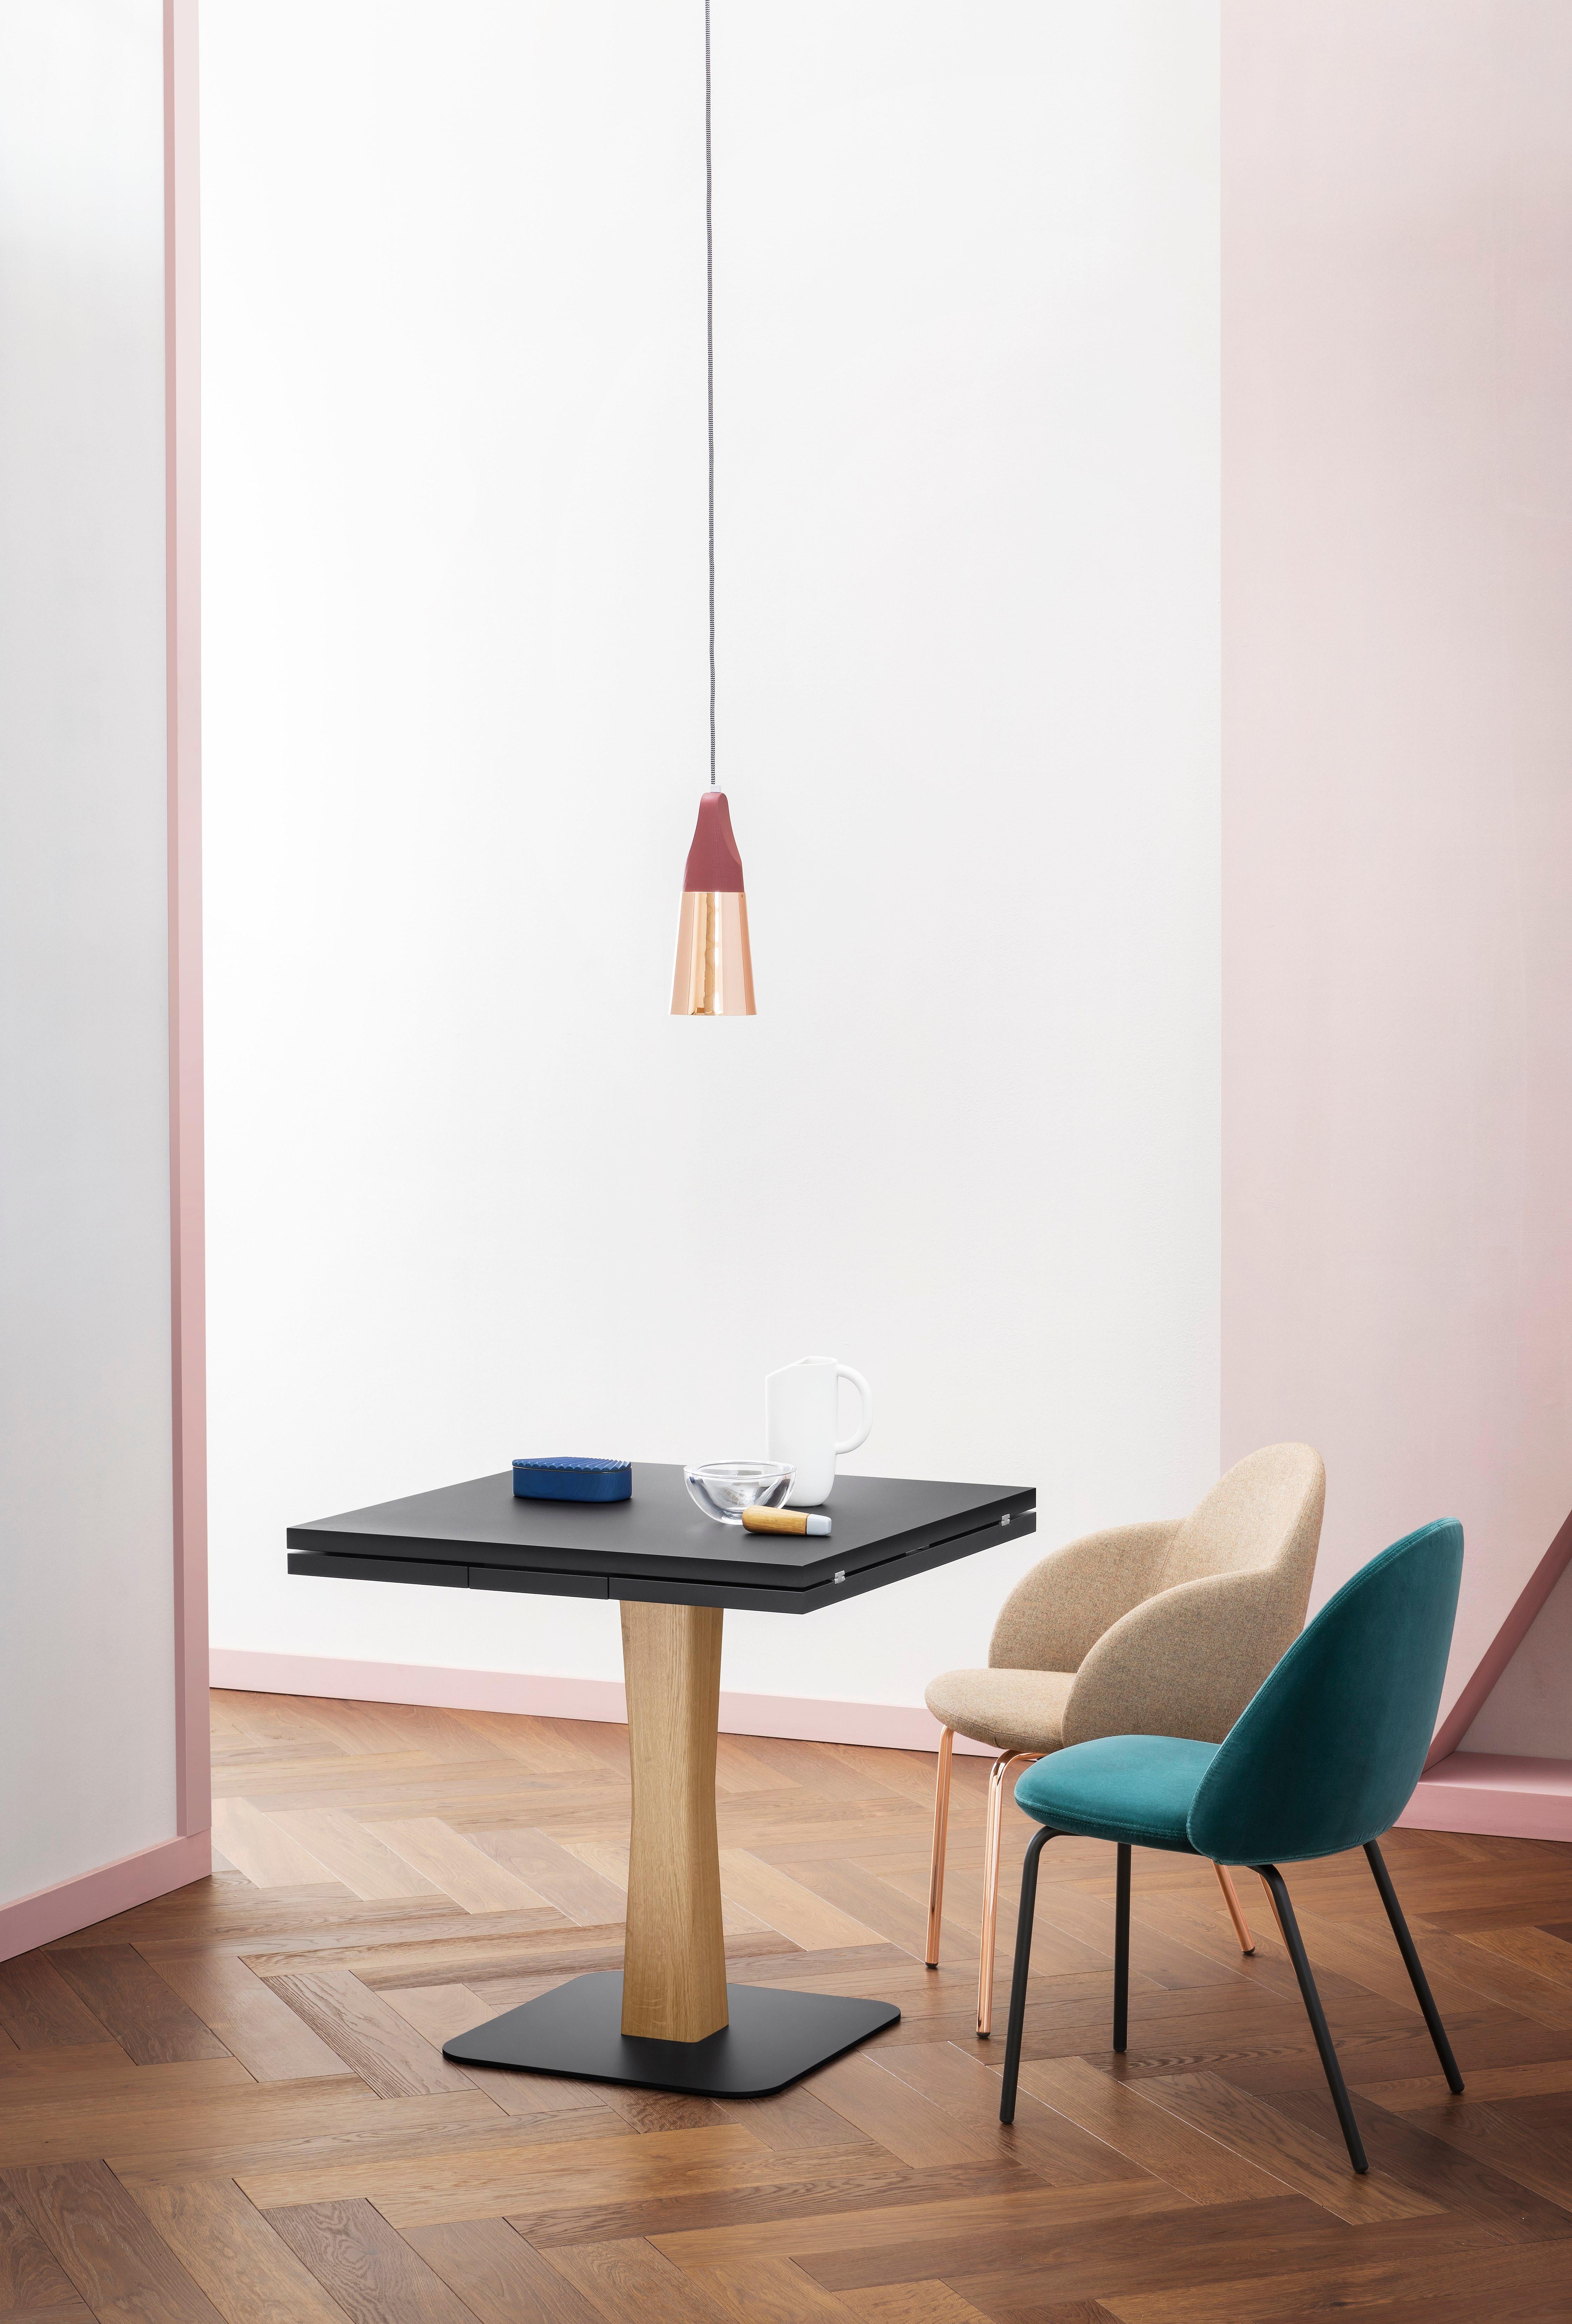 Gualtiero ist für kleinere, intimere Räume gedacht, vom Bistro bis zur kleinen Wohnung, wo ein ikonischer, praktischer Tisch seinen Platz findet.

Ausziehbarer Tisch mit Metallplatte, schwarz oder weiß lackiert. Das Gestell ist in Eiche, Nussbaum